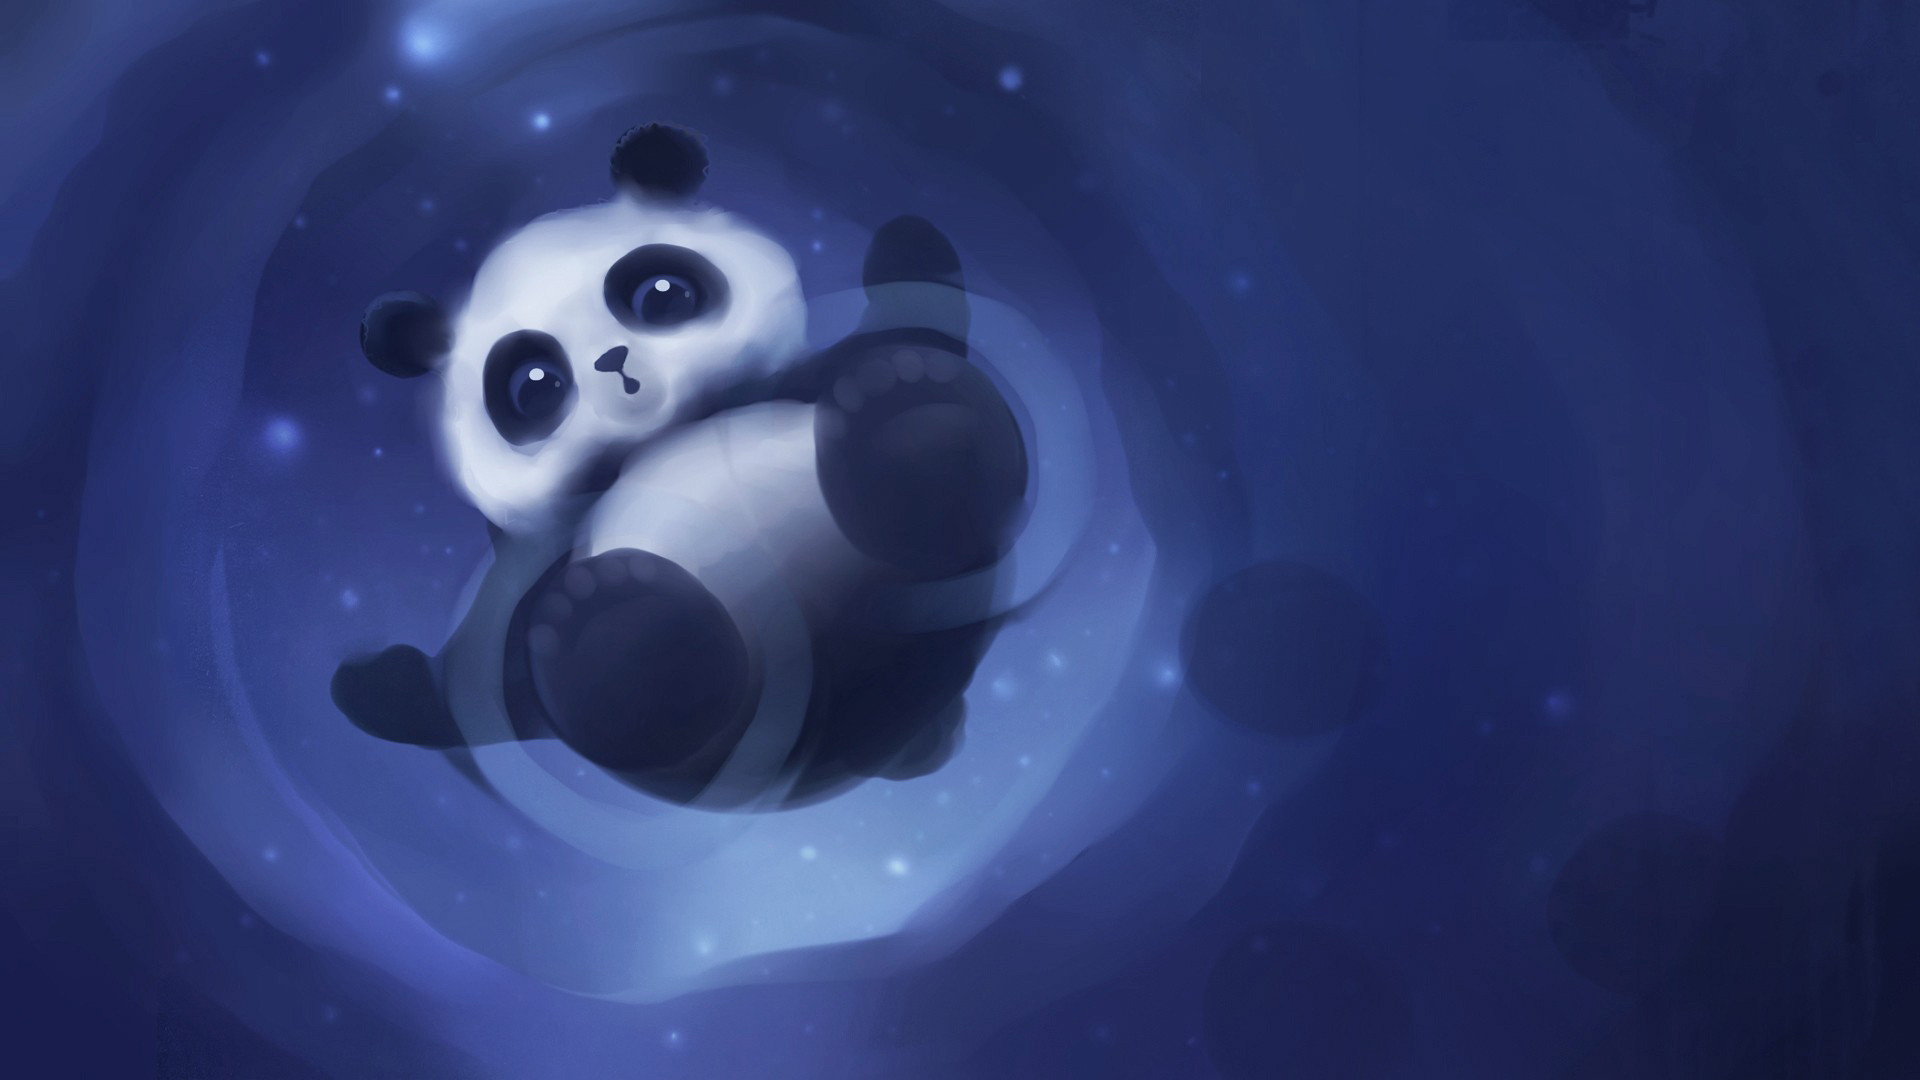 1920x1080 cute panda wallpaper